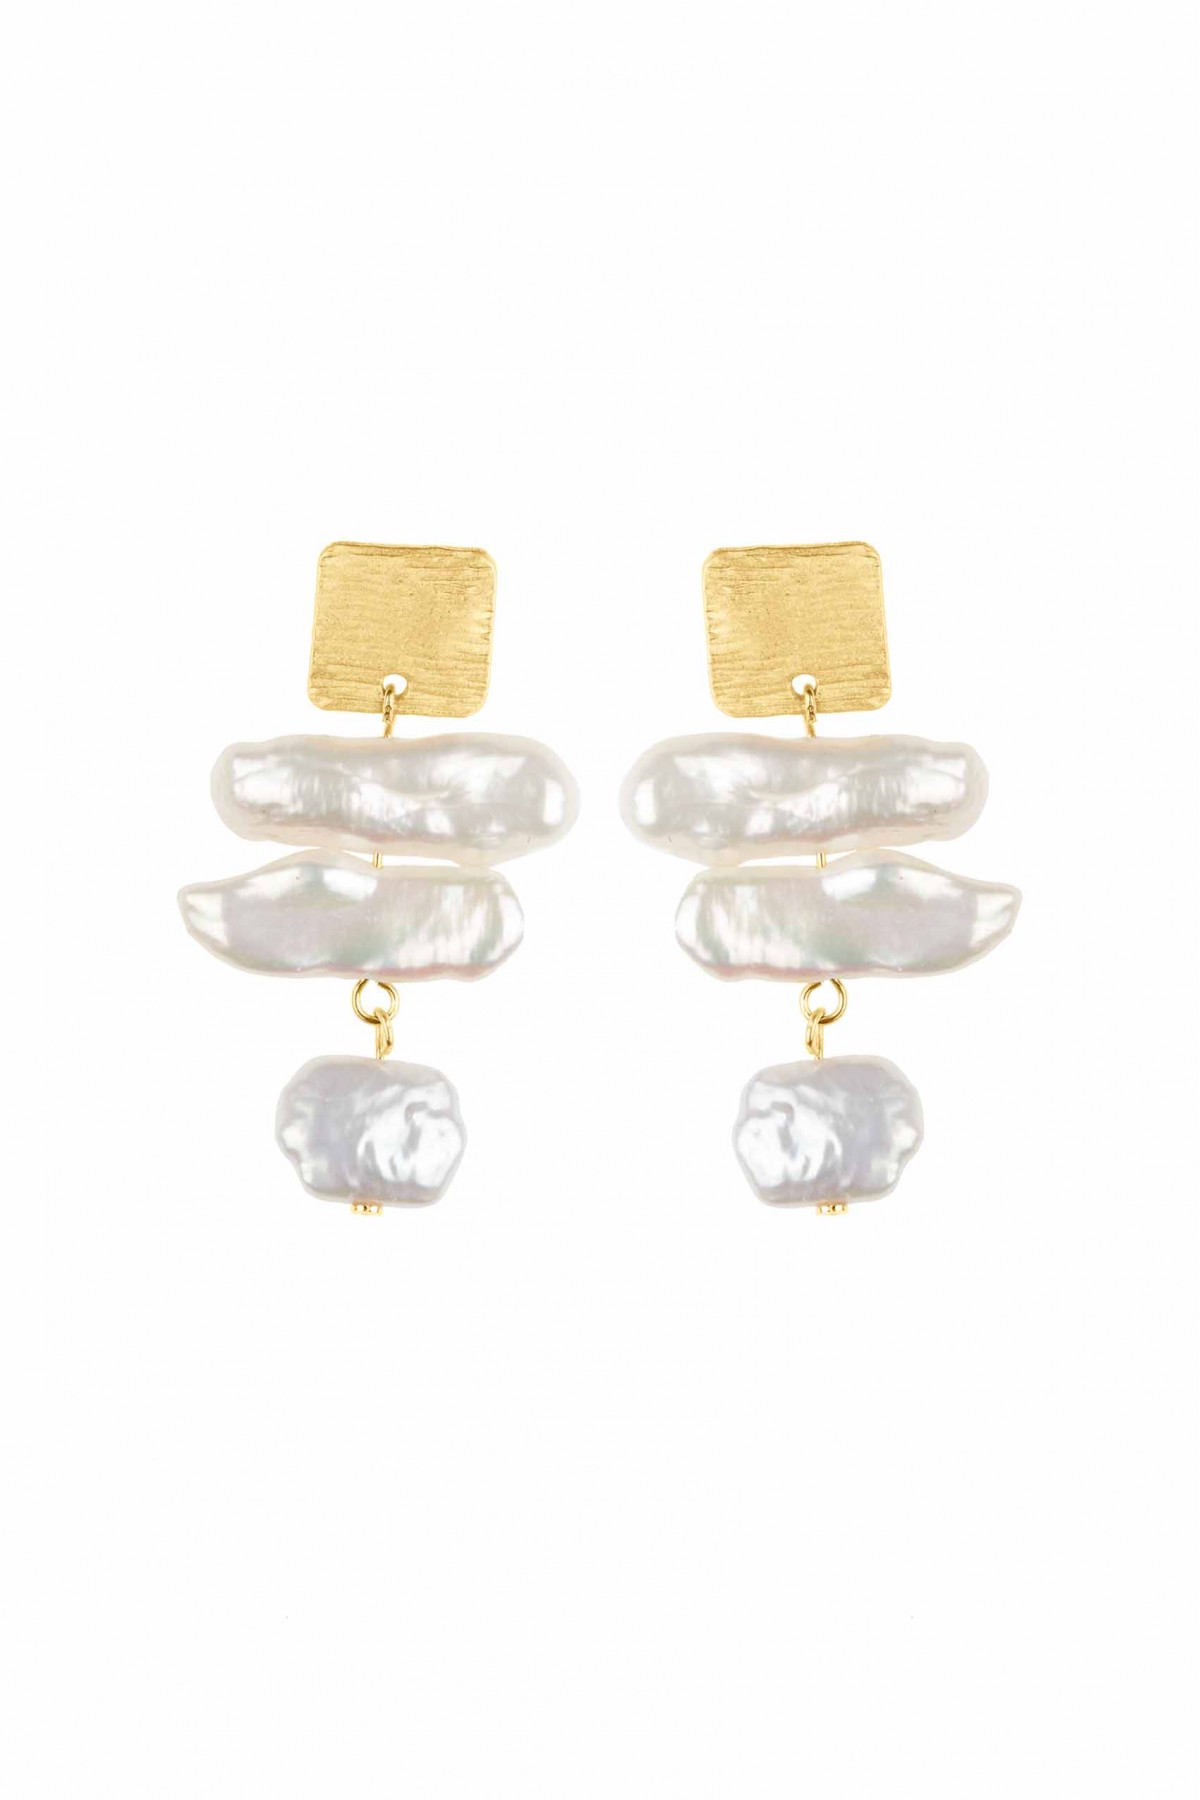 Matisse Pearls Earrings